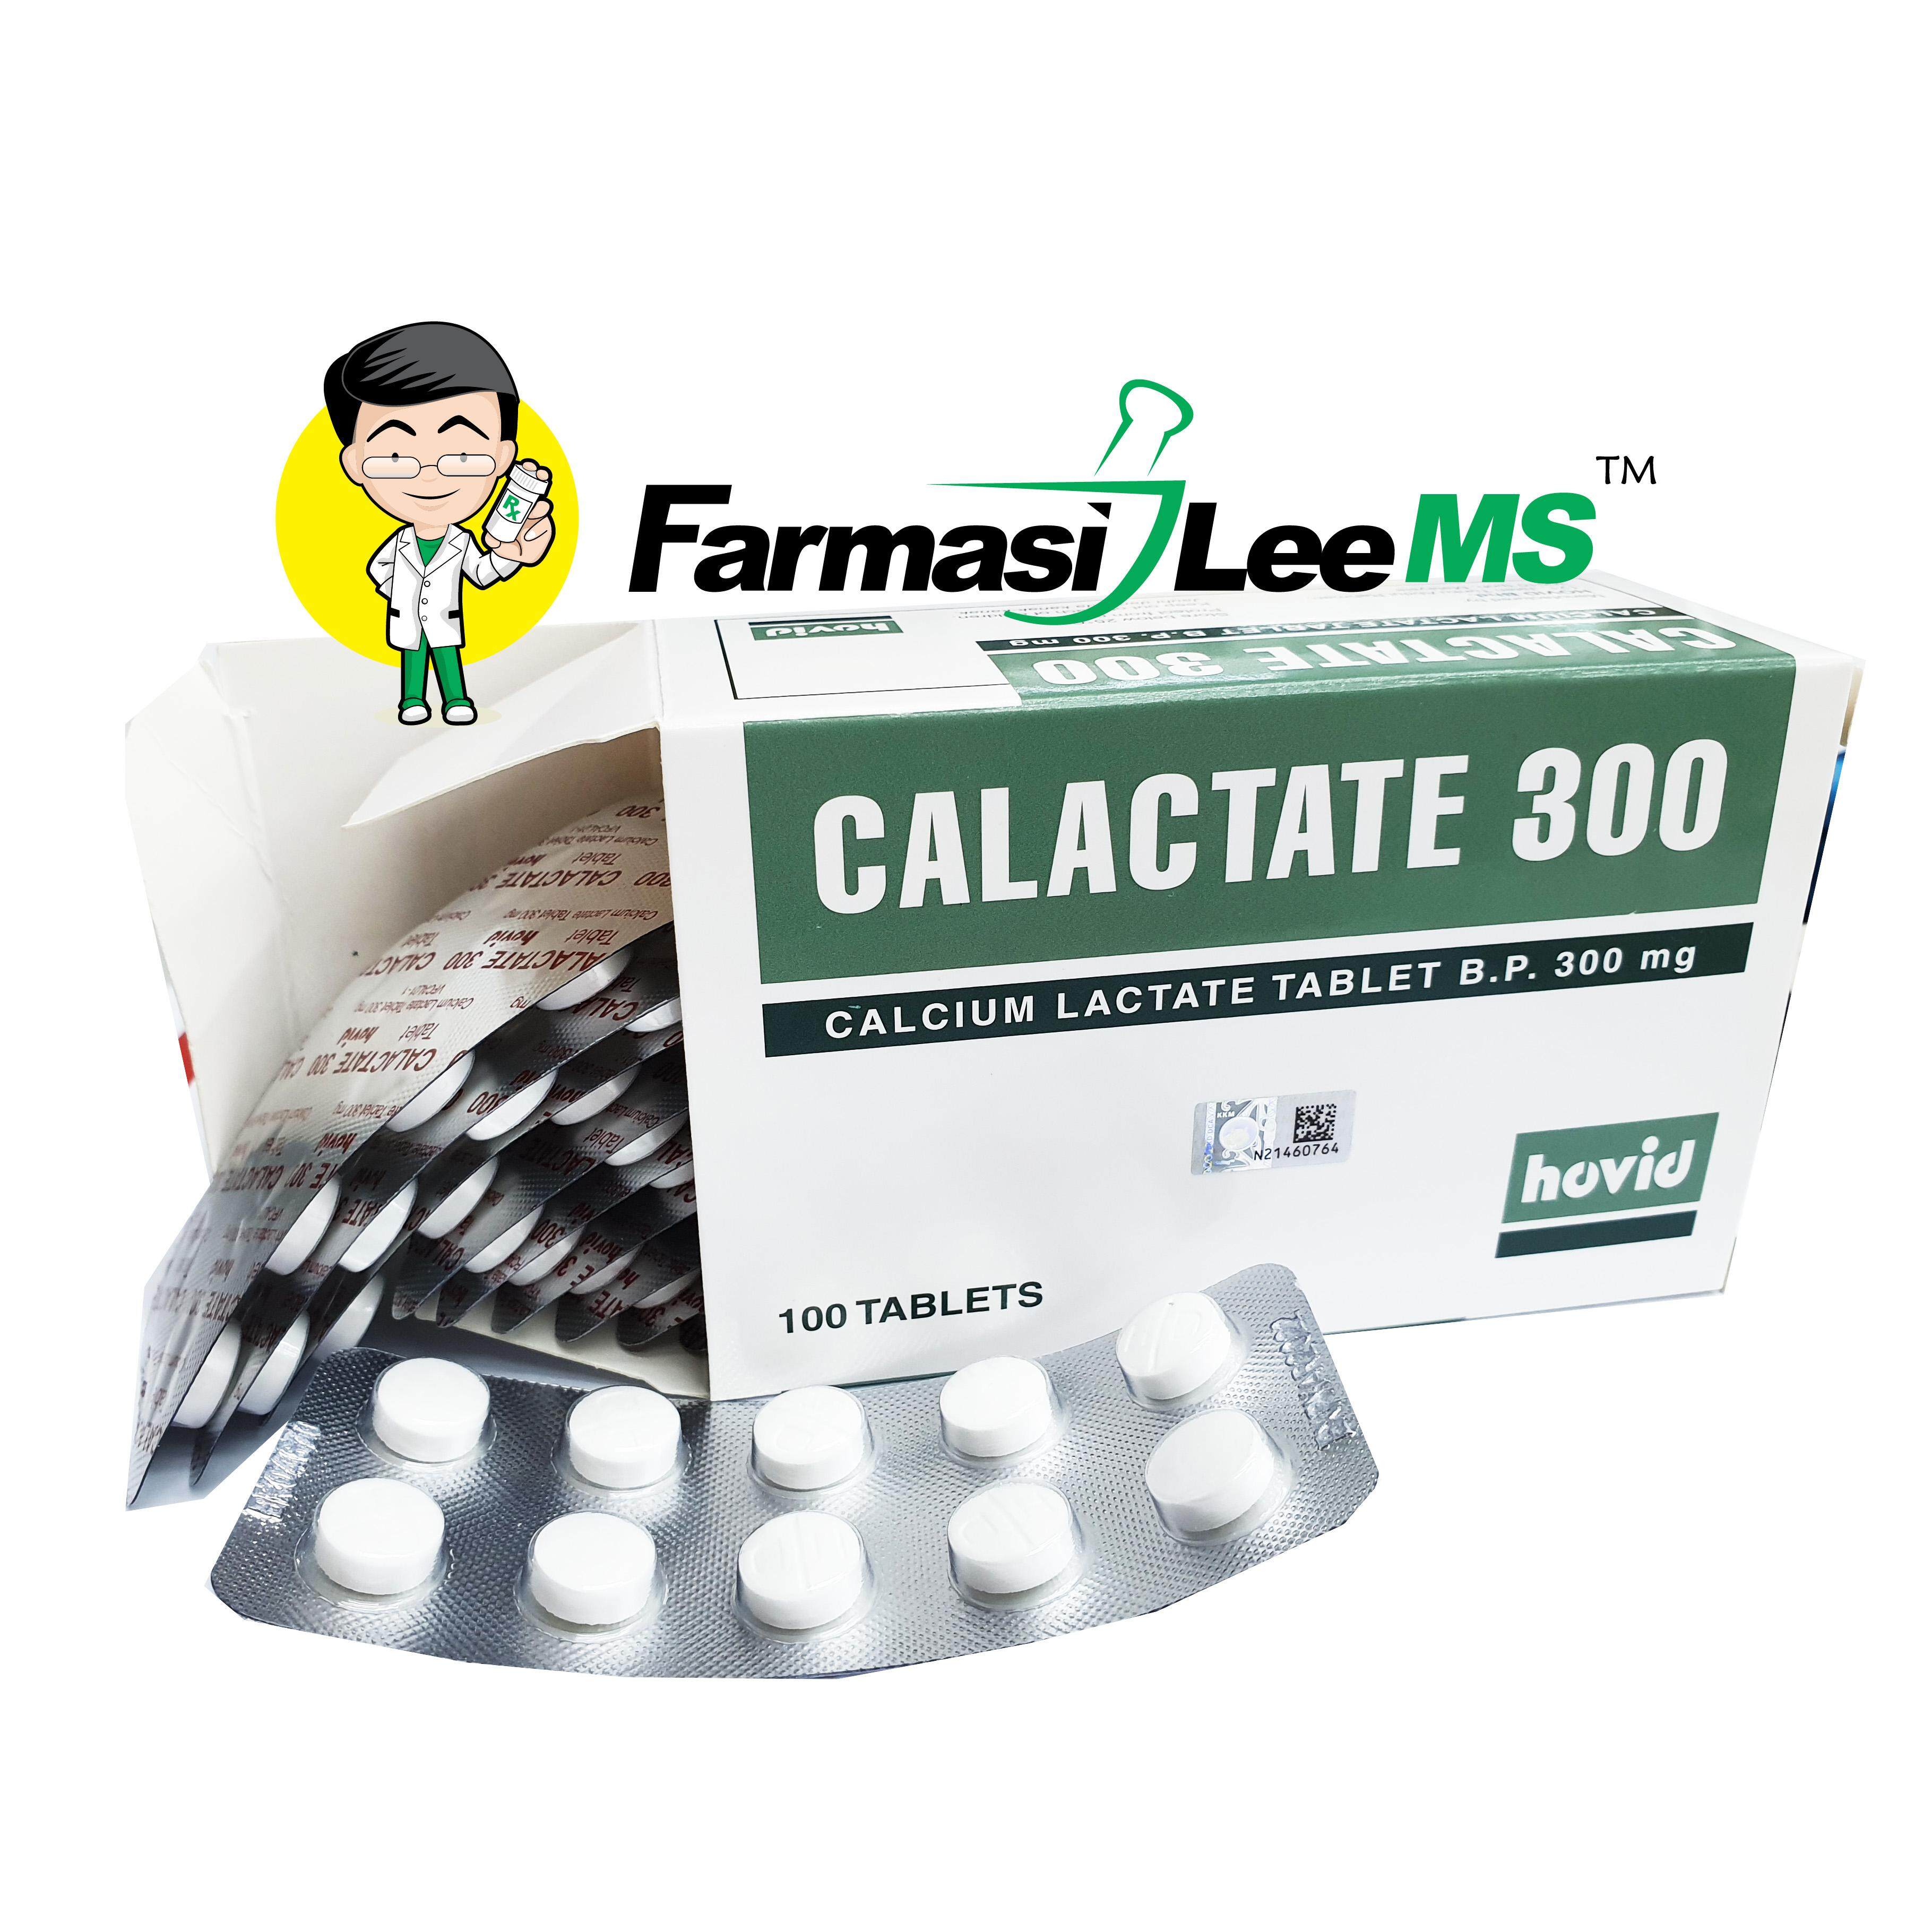 Lactate 300mg calcium Calcium lactate